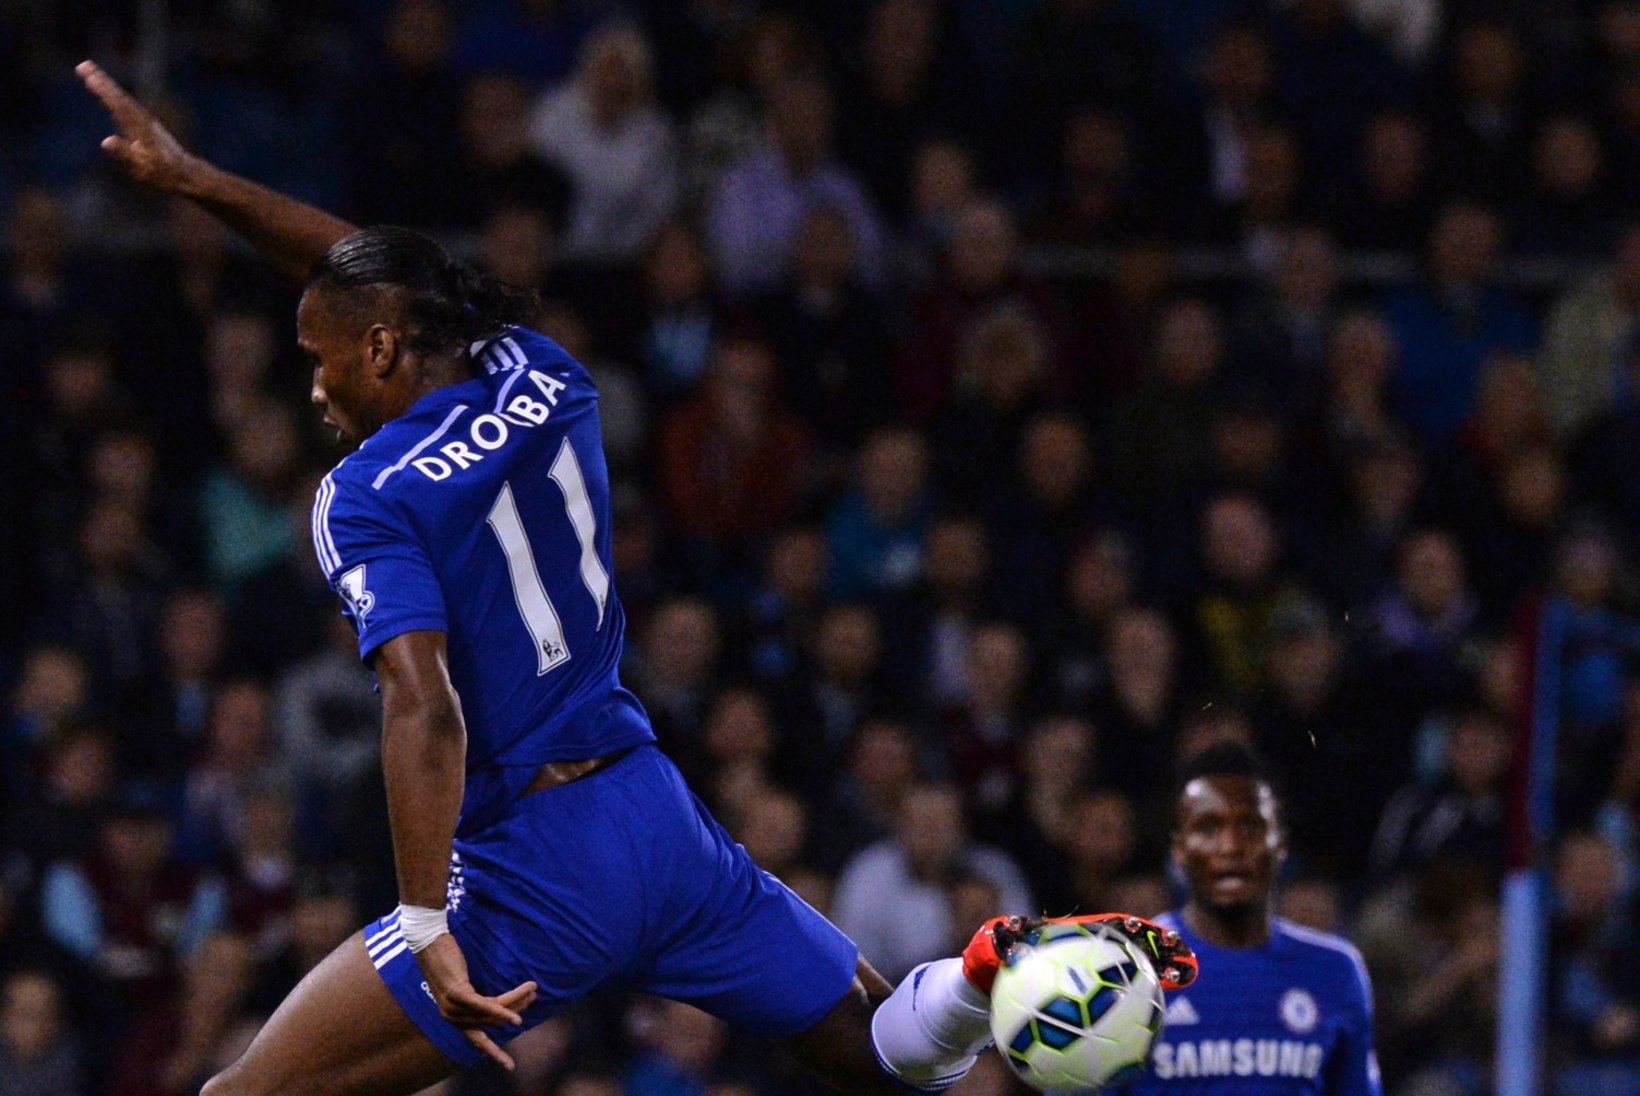 GALERII: Costa lõi debüütmängus värava, Chelsea sai esimese võidu